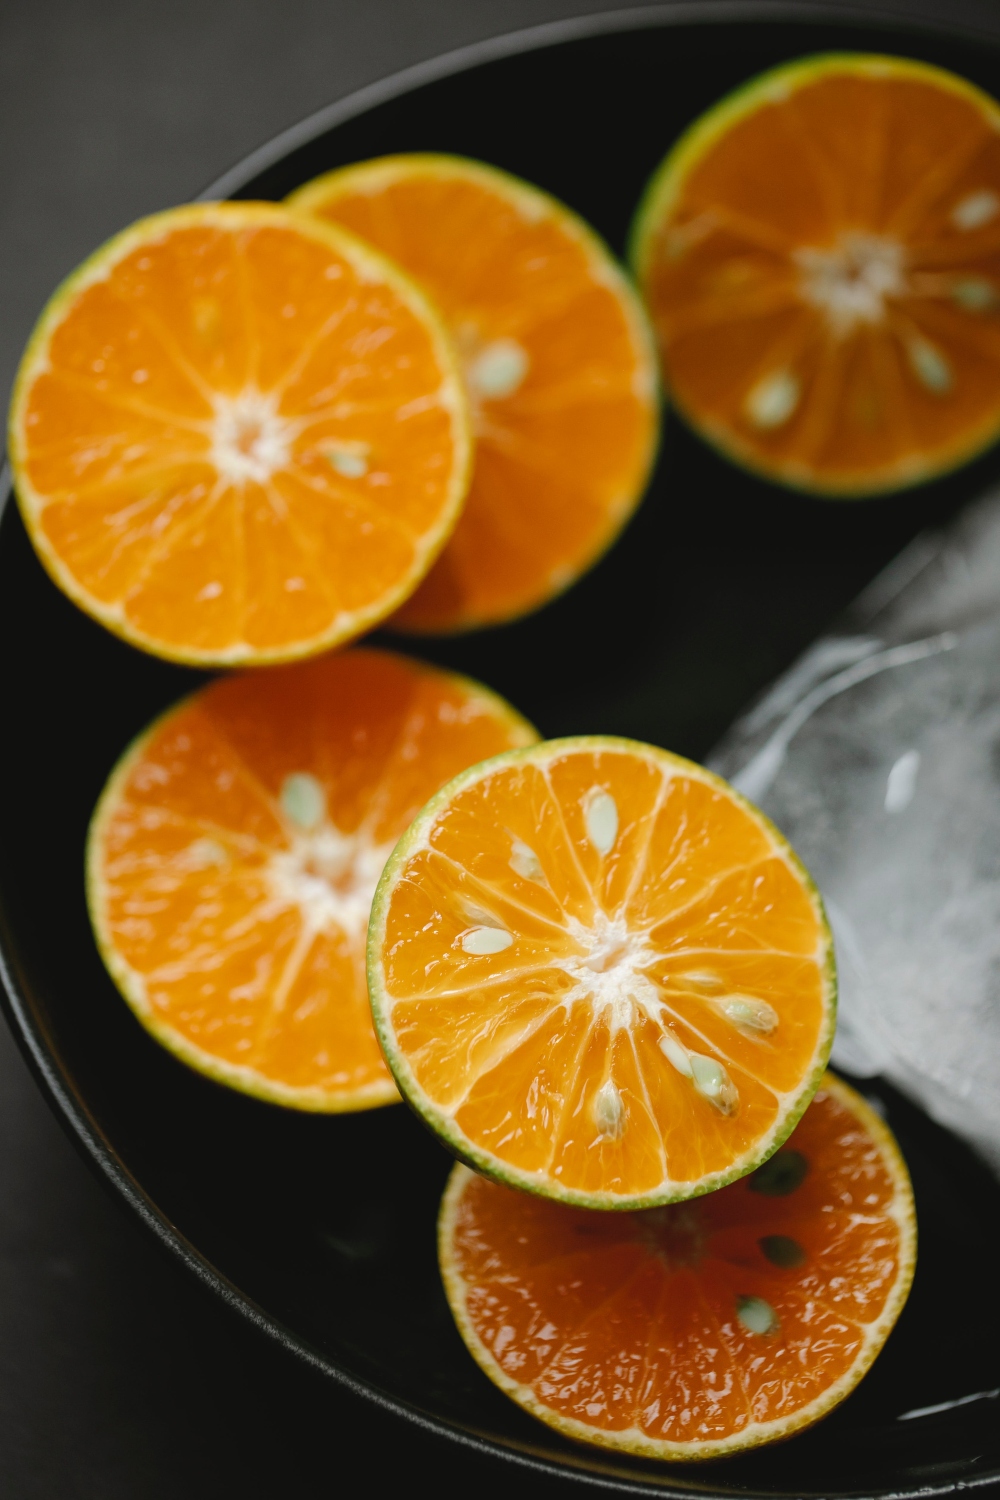 pomorandže za negu lica 02 Kora pomorandže je bogata vitaminom C, a ovako je možete koristiti za savršen glow efekat kože